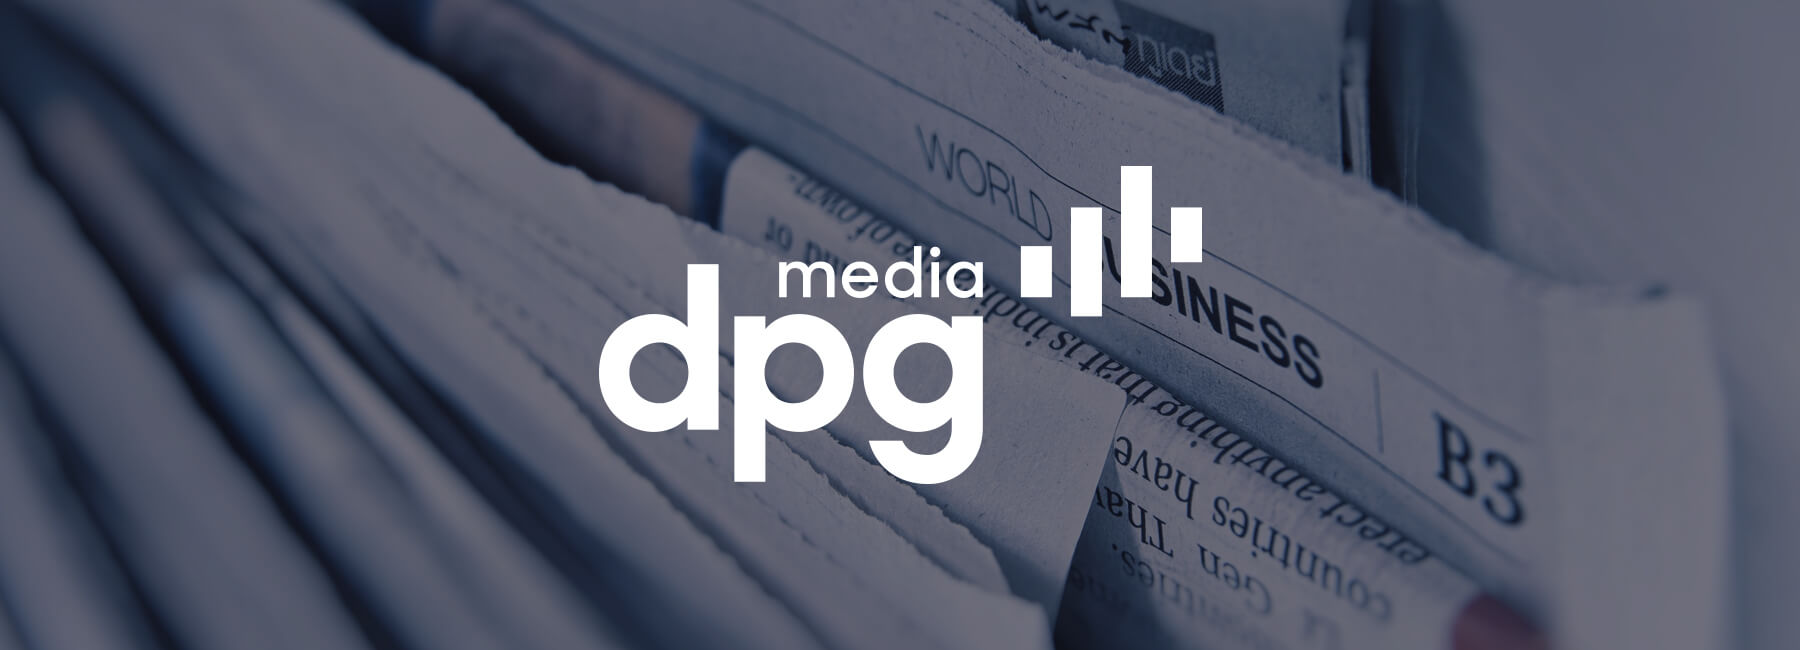 DPG Media lanza el software Mopinion en todas las marcas de noticias online